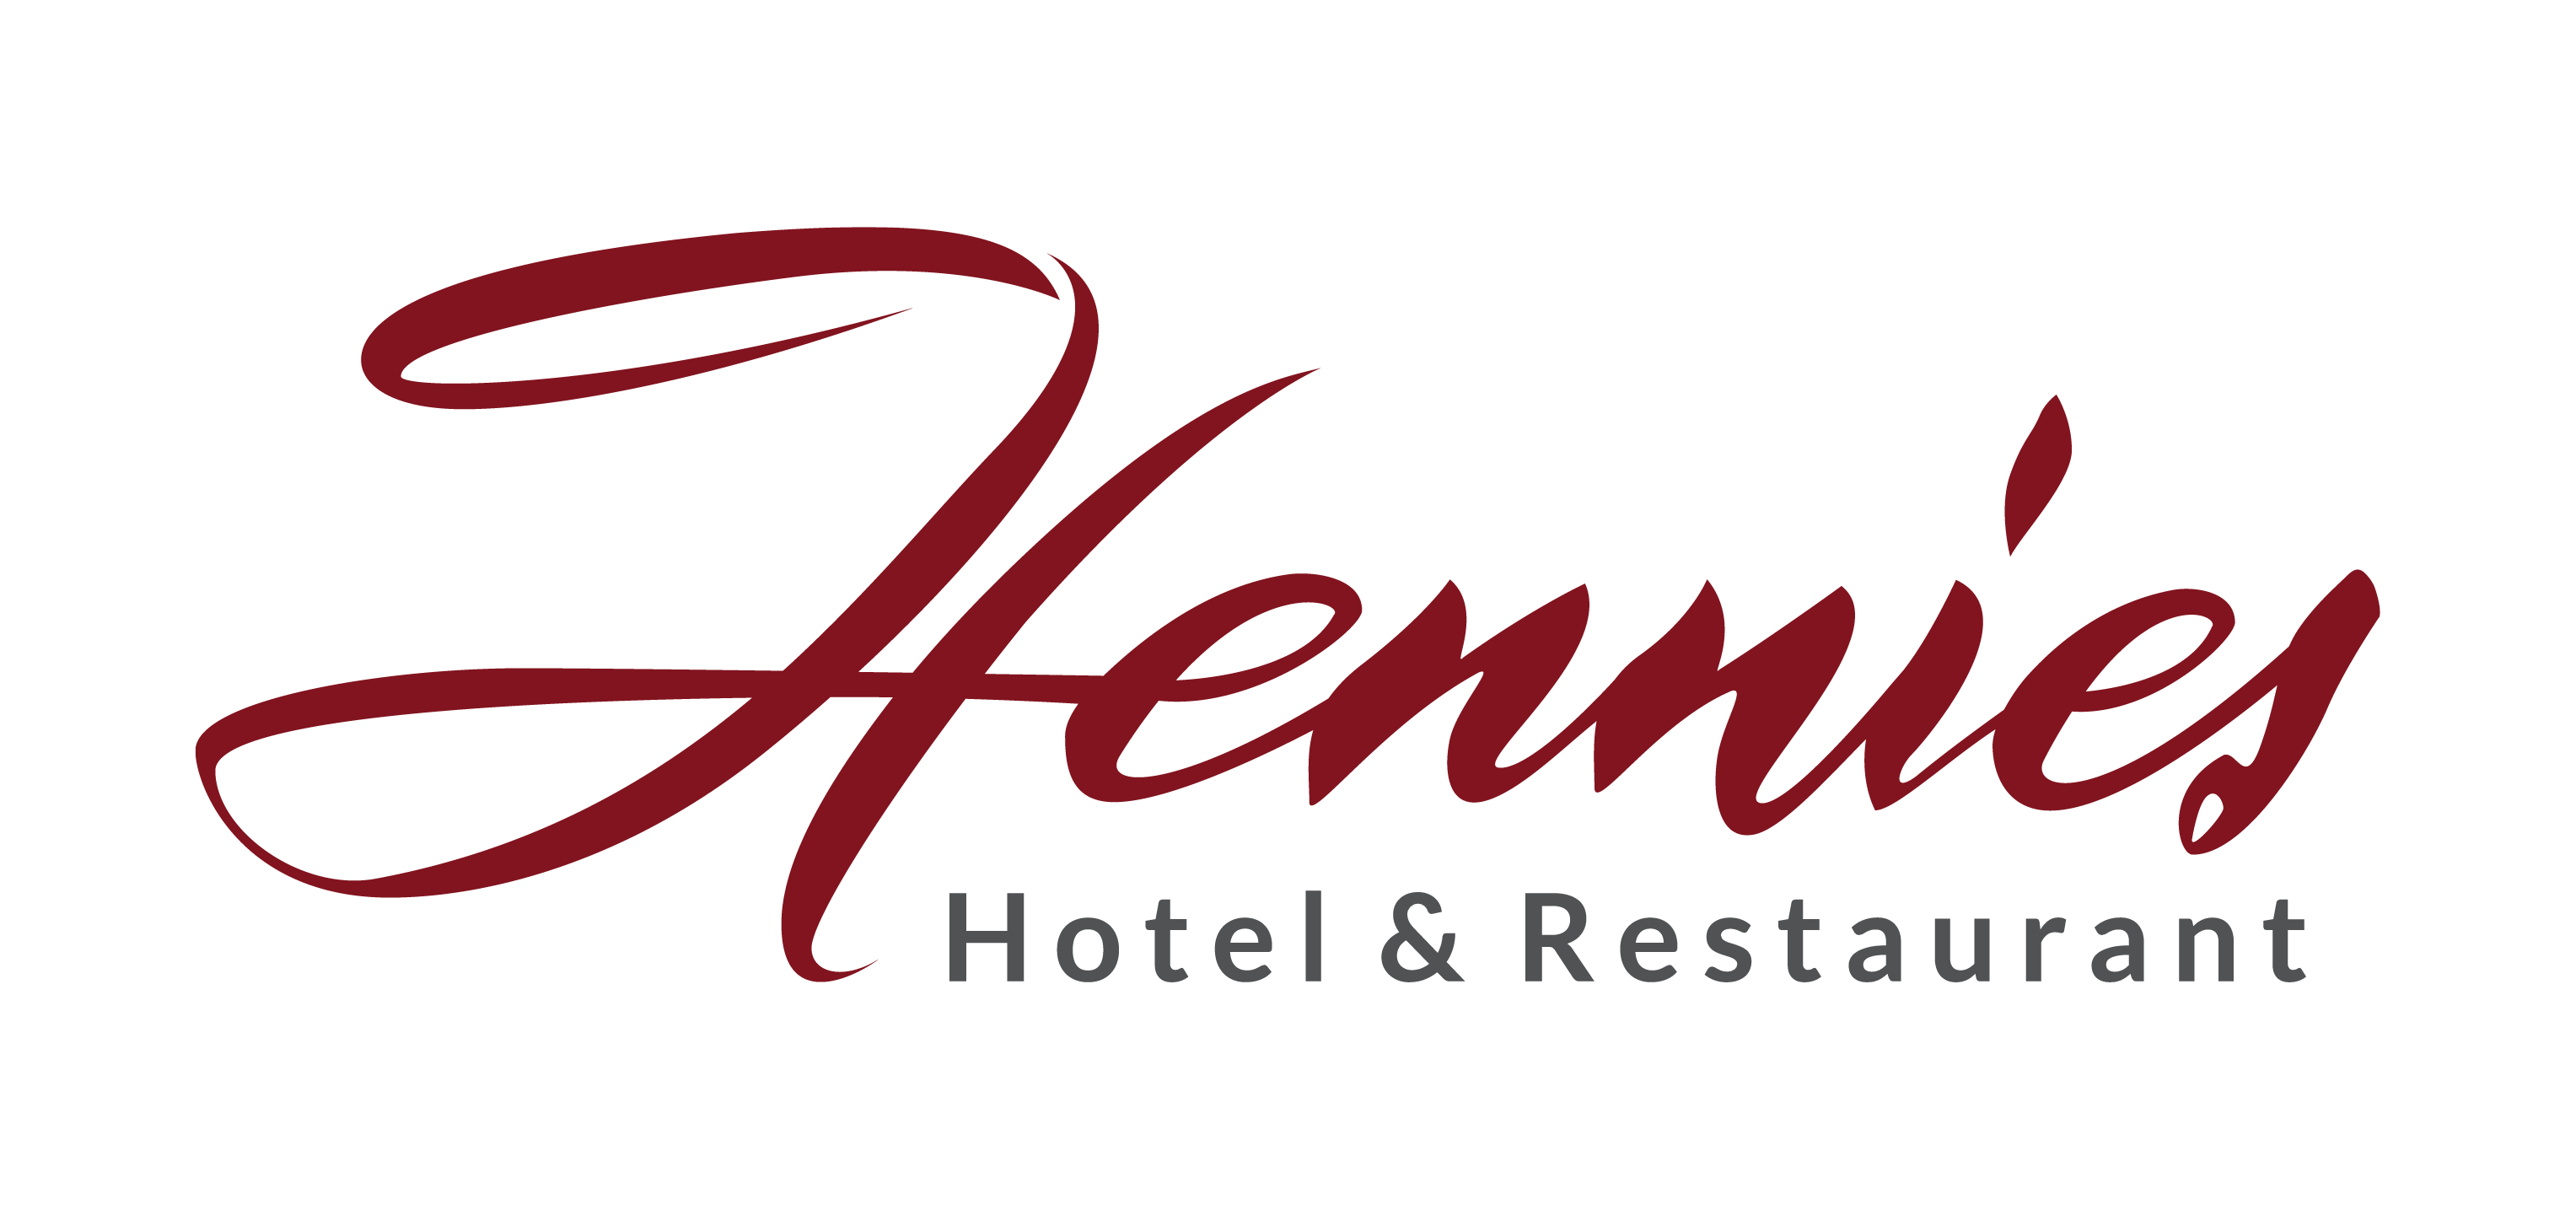 Hotel Hennies